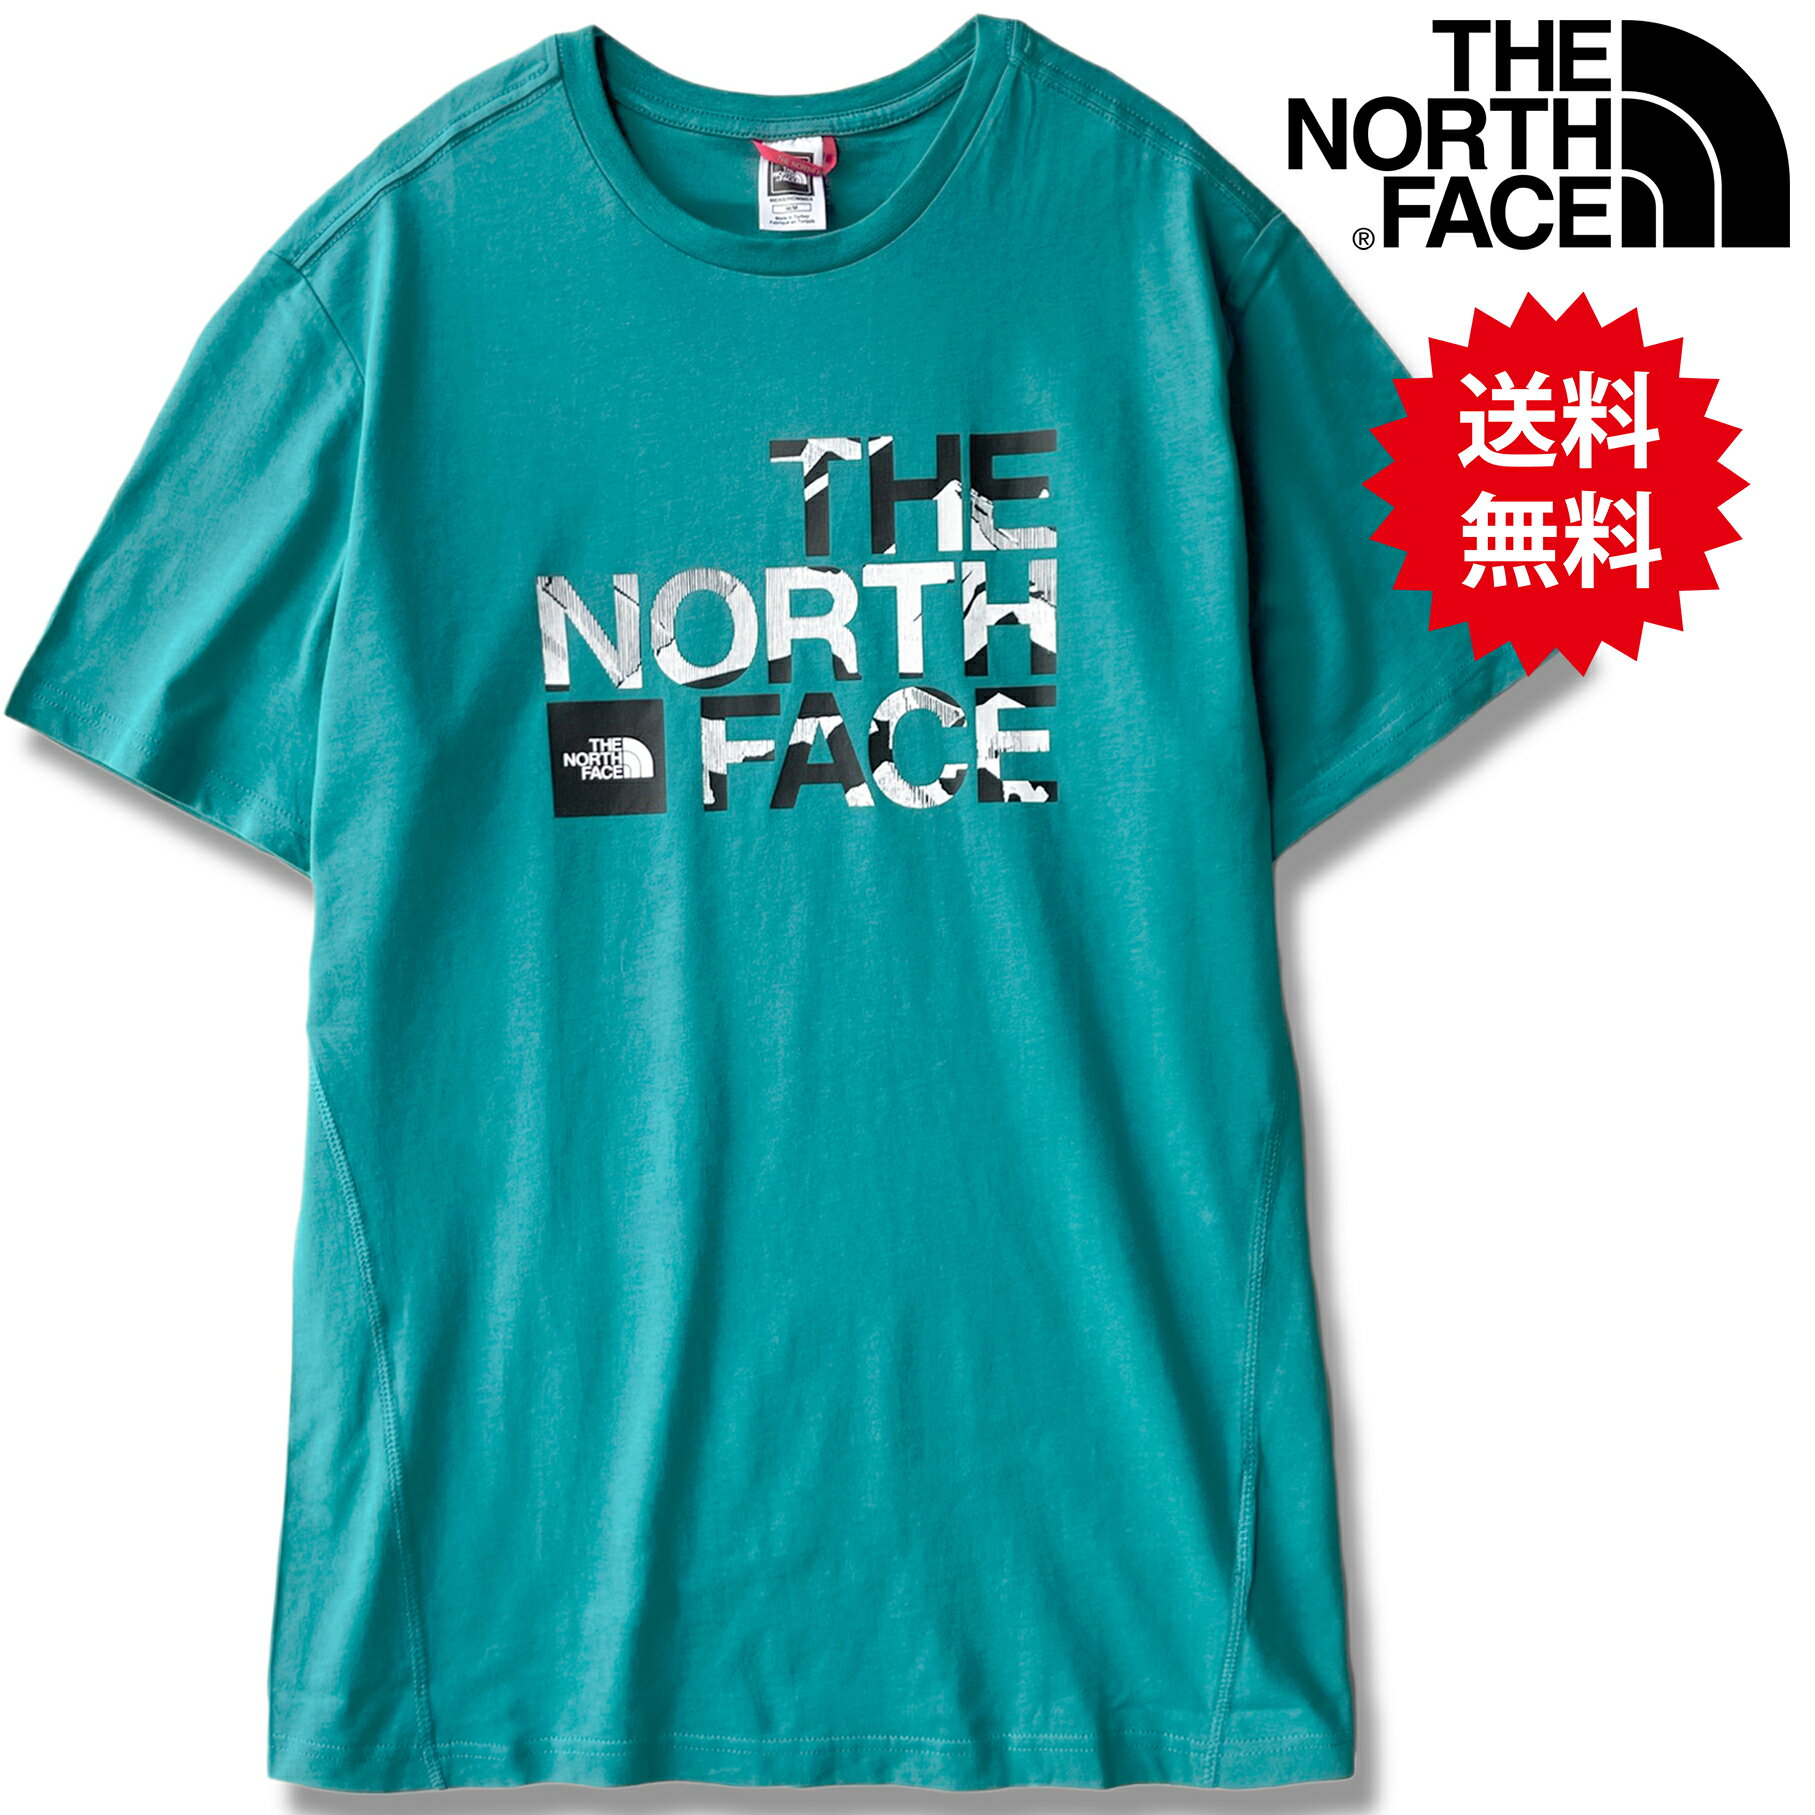 【 送料無料 】 ノースフェイス Tシャツ メンズ THE NORTH FACE Chest Print Tee レディース も着れる 半袖Tシャツ S M L XL LL 2L 青 ブルー 緑 グリーン ロゴTシャツ ビッグロゴ 人気 新作 かっこいい おしゃれ かわいい ザノースフェイス 海外モデル